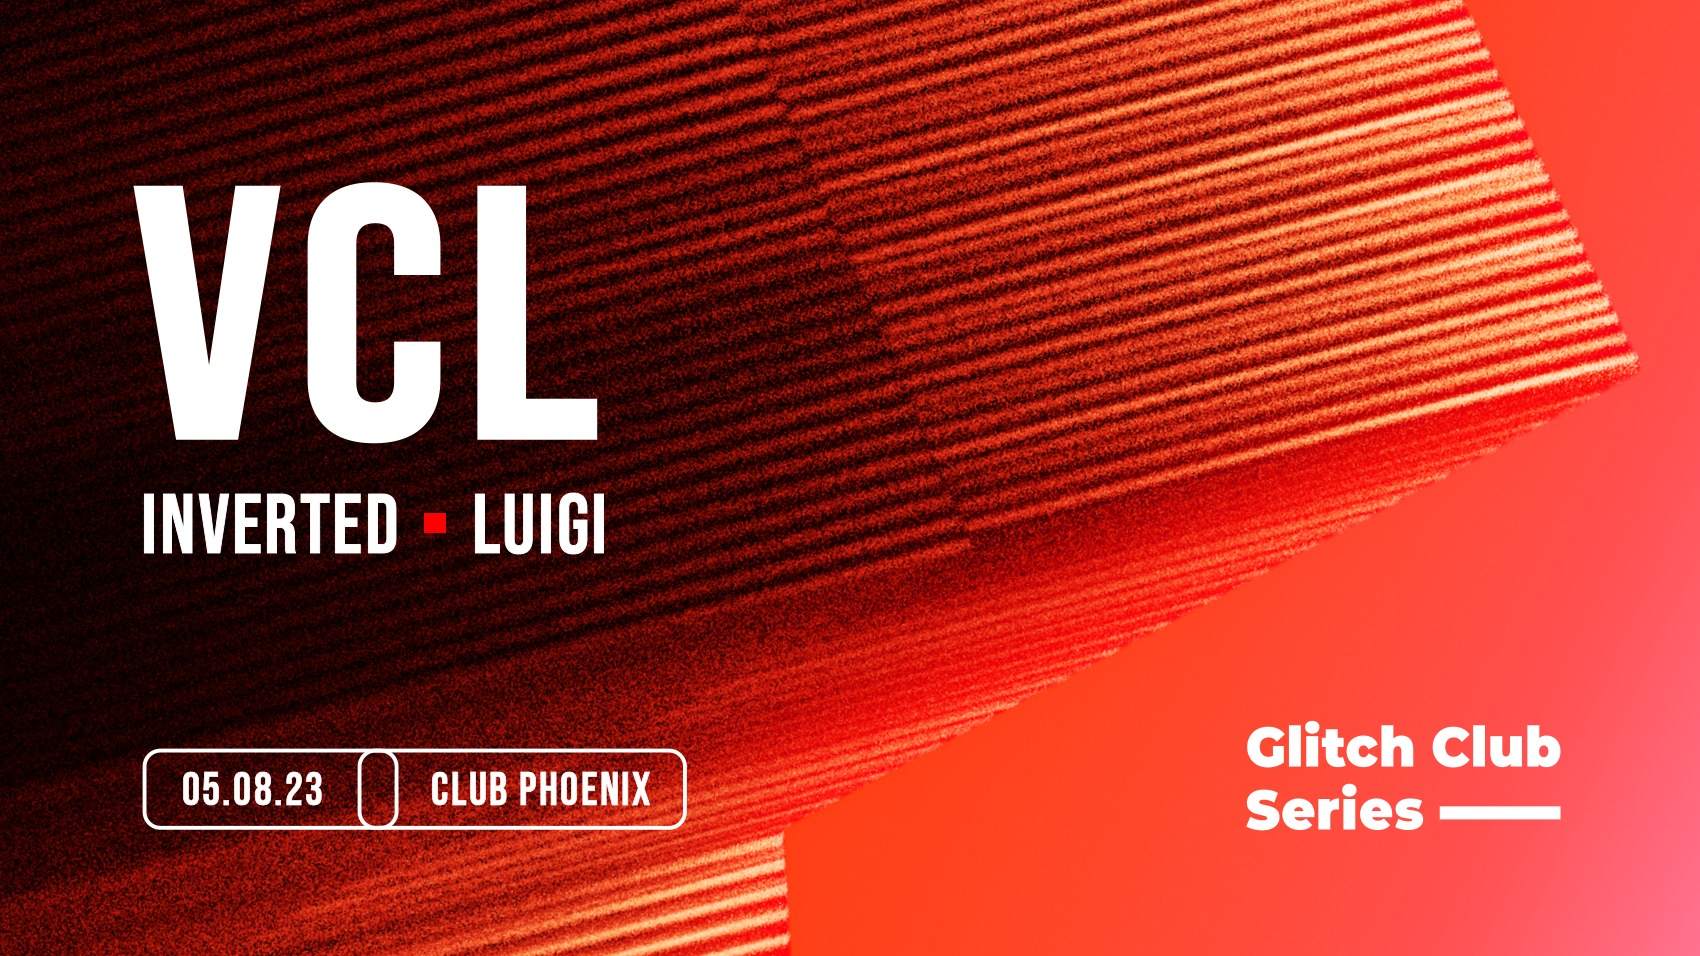 Glitch Club Series: VCL - Página frontal